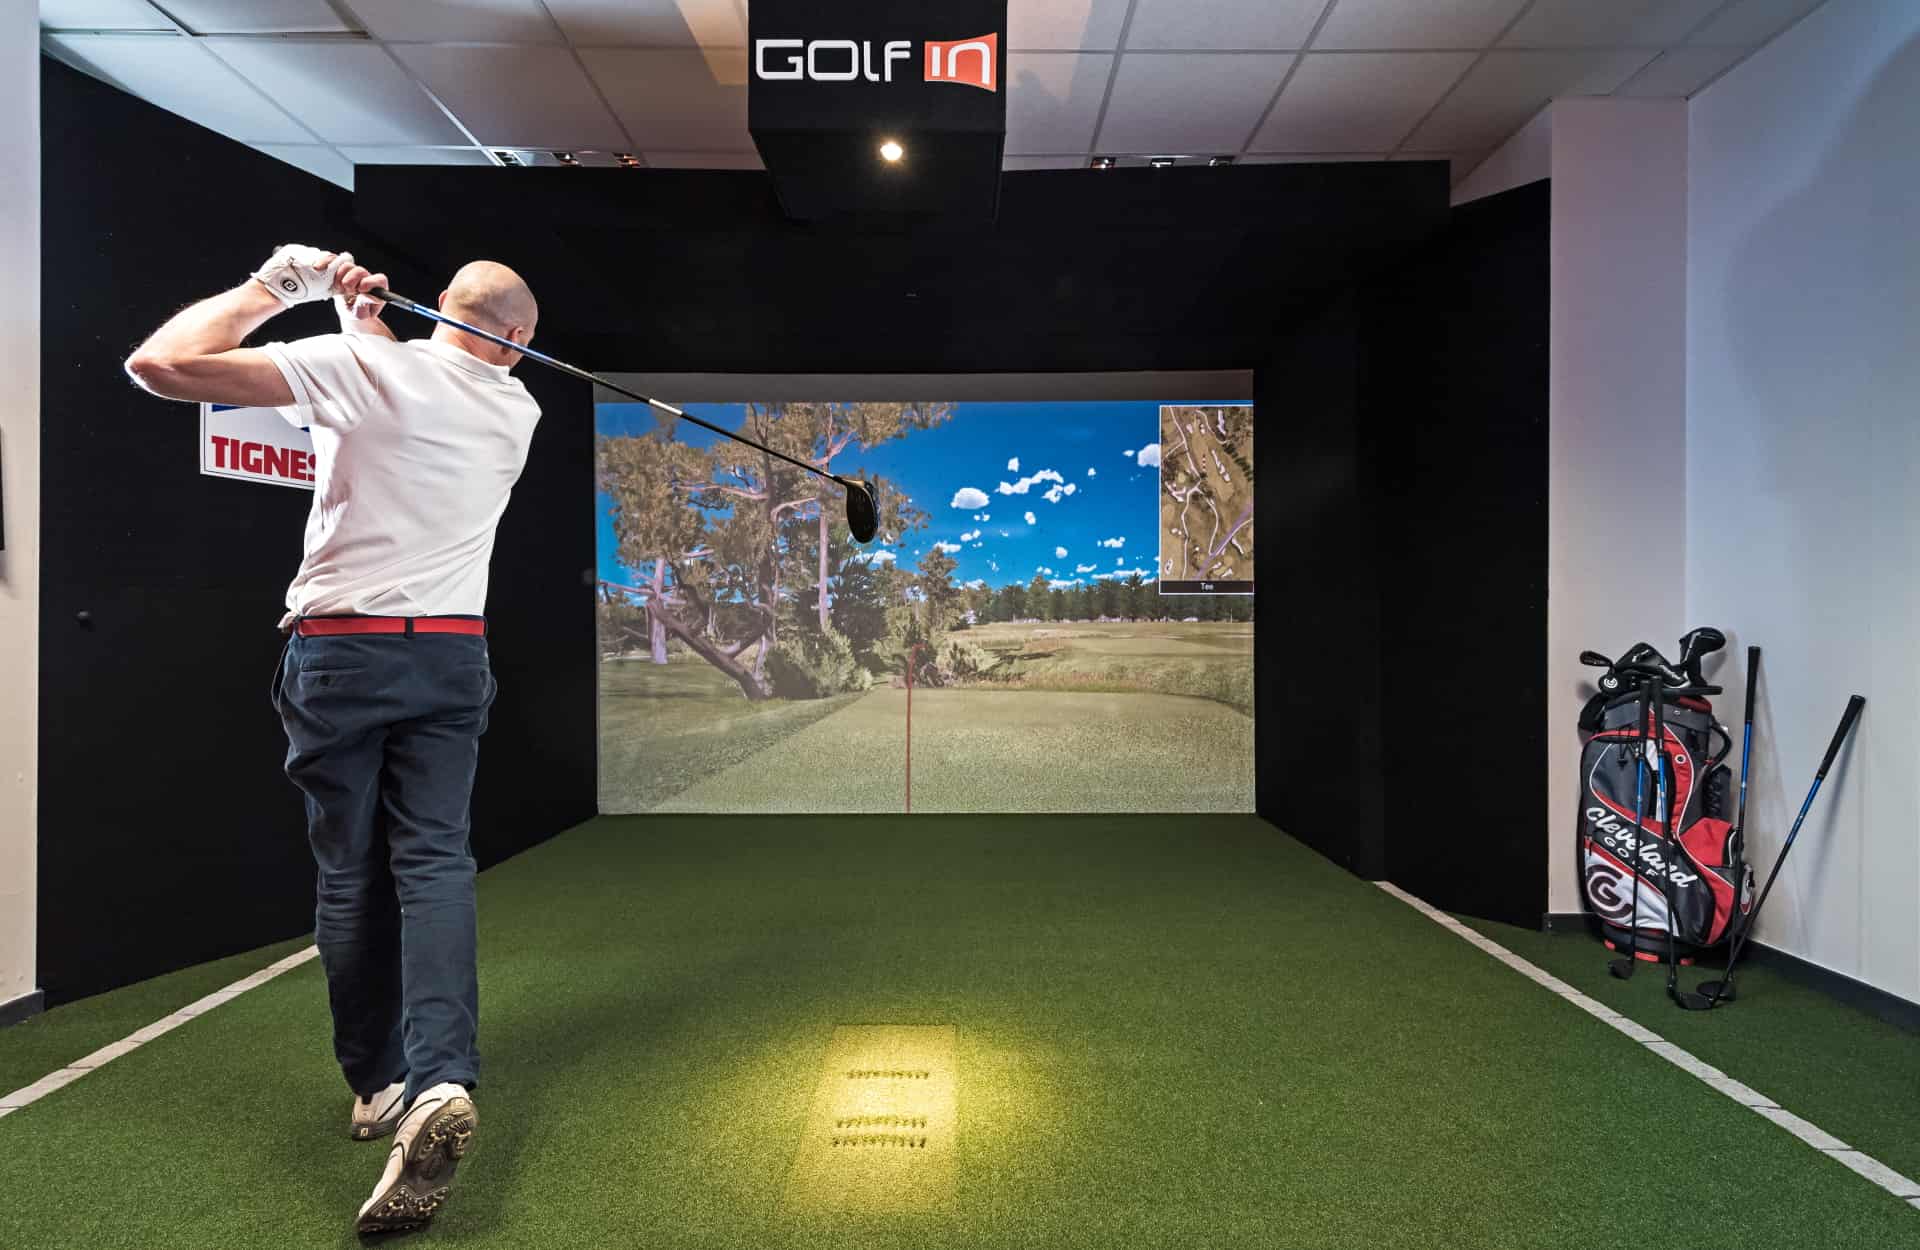 Simulateur de golf à Tignes Greg Mistral